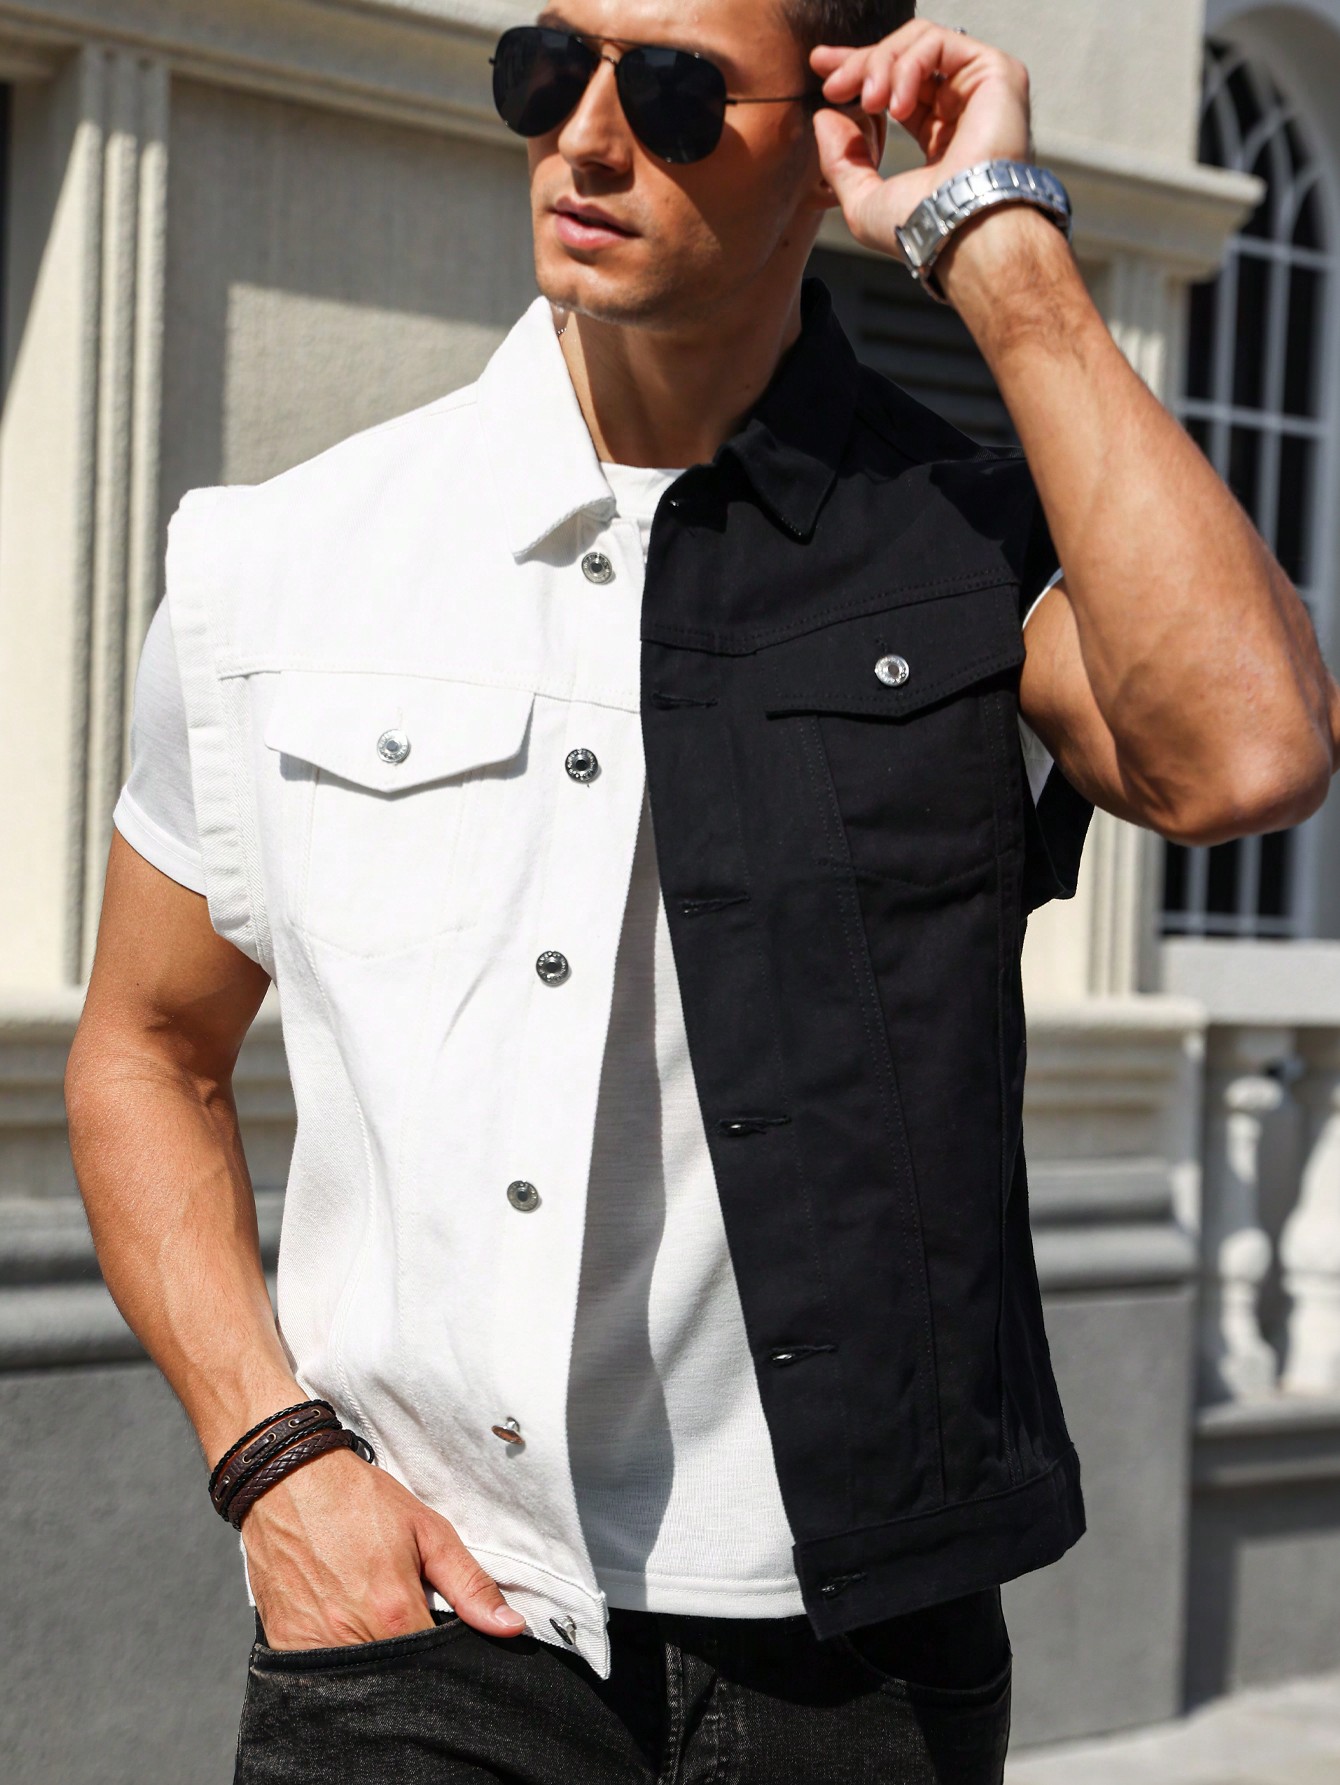 цена Мужская джинсовая рубашка без рукавов Manfinity EMRG с воротником, черное и белое